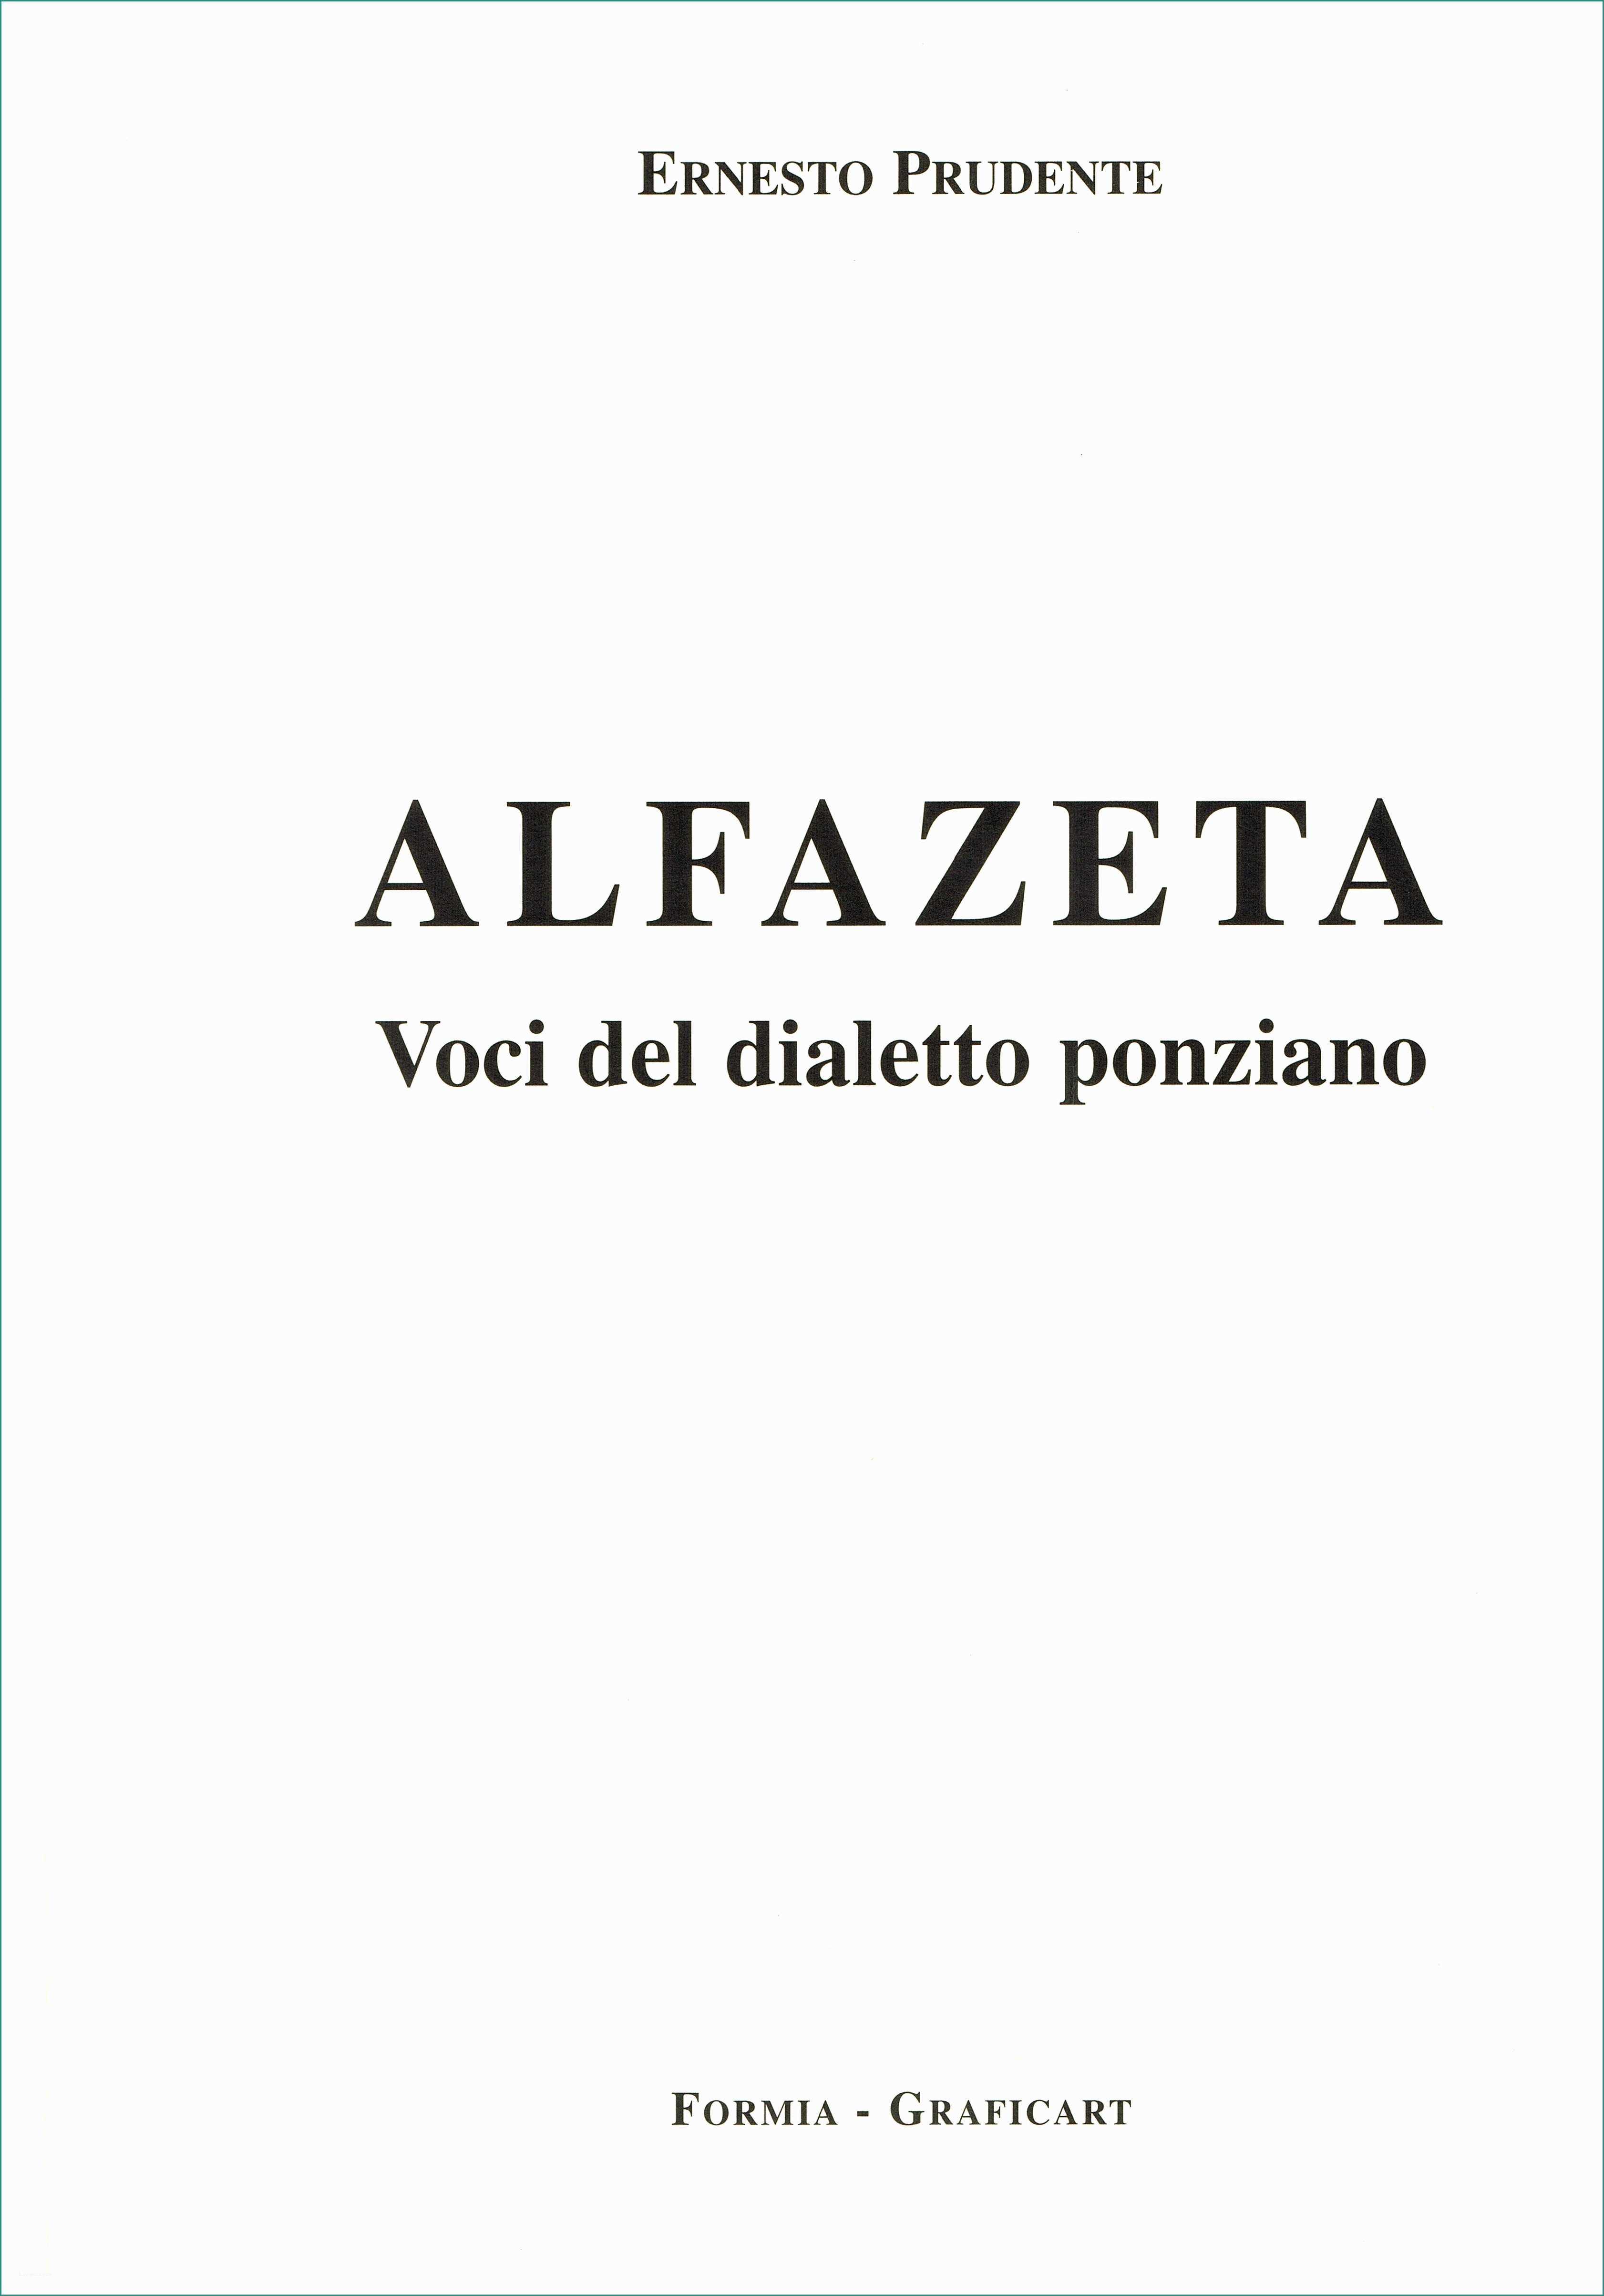 Serbatoio Acqua Piovana Prezzi E Alfazeta” Voci Del Dialetto Ponziano 1 Ponza Racconta